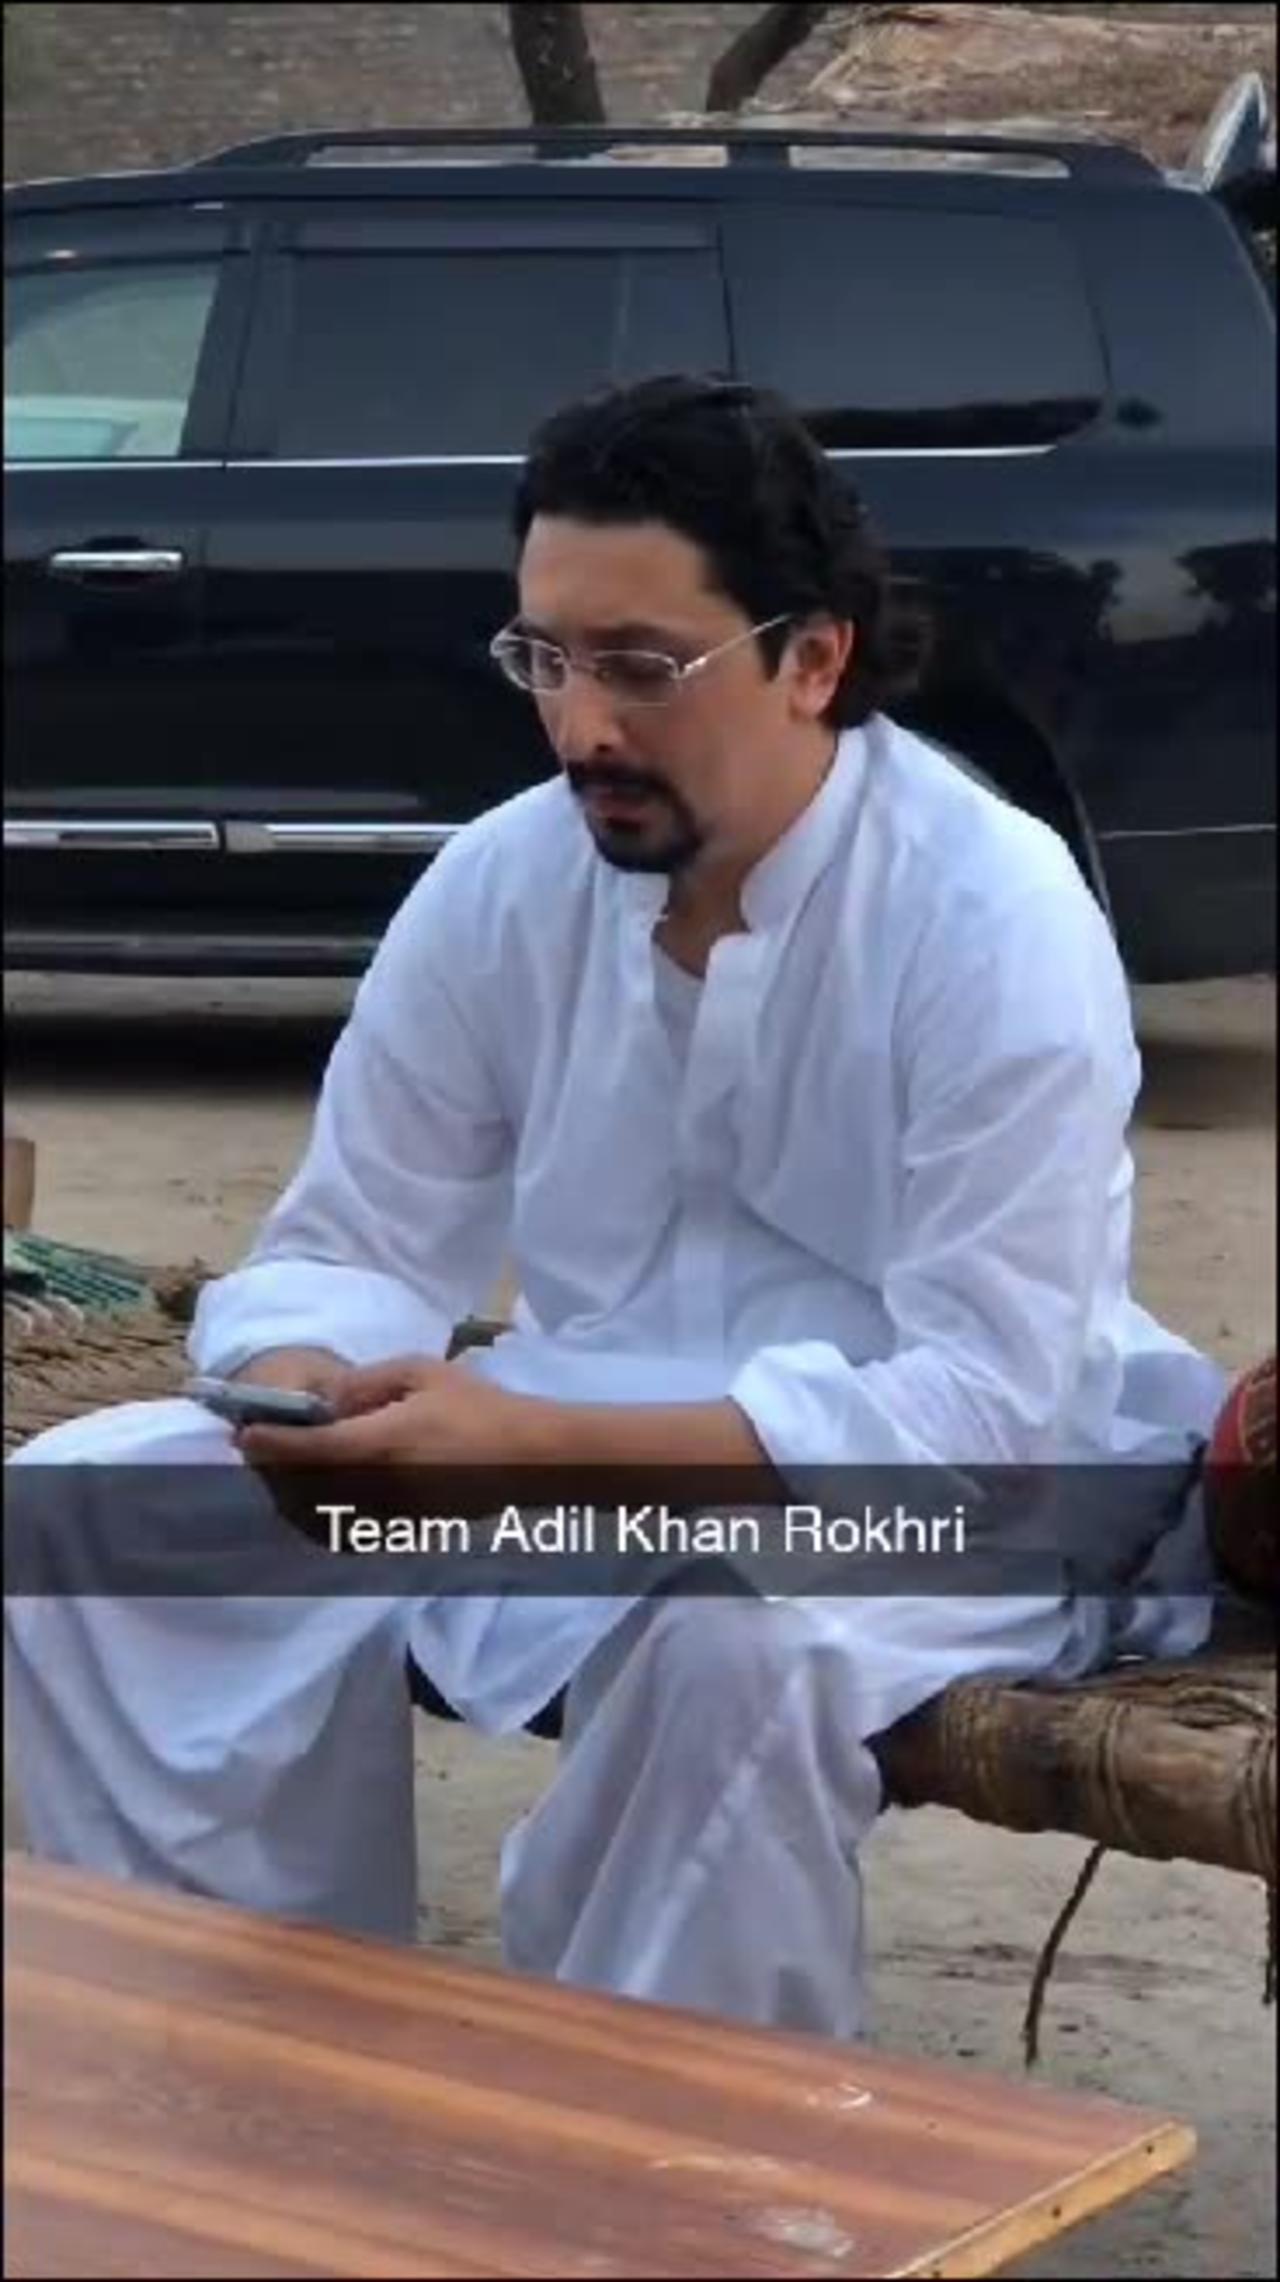 Adil Abdullah Khan Rokhri